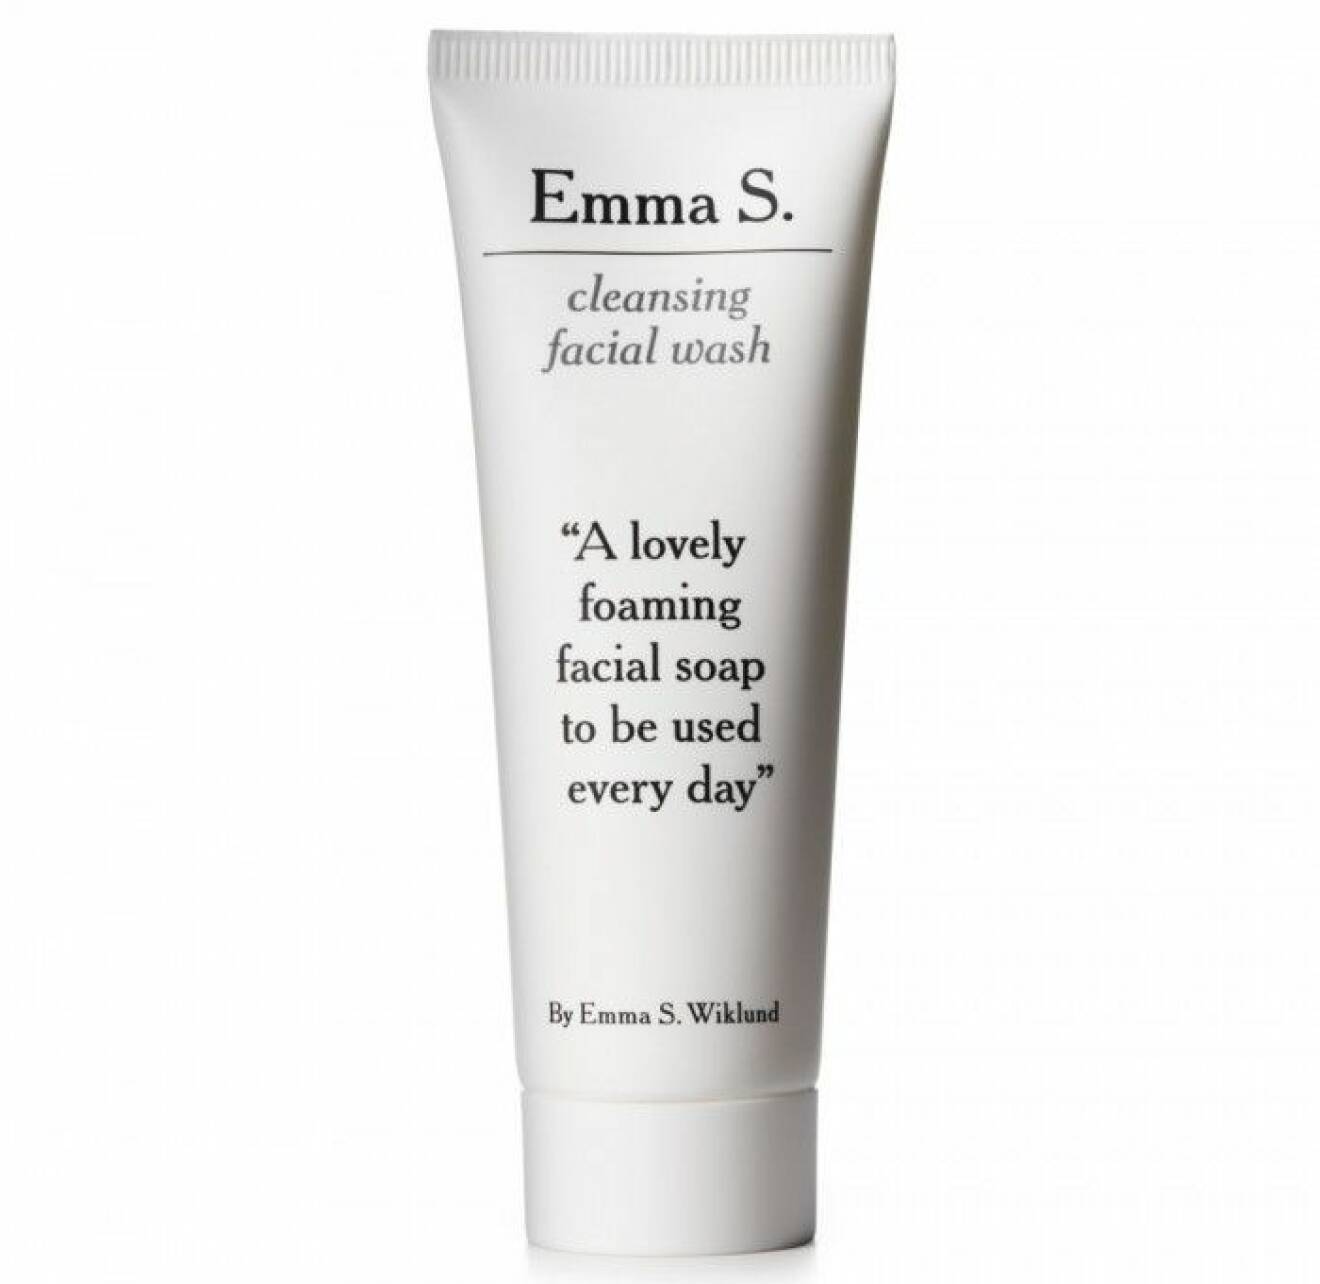 Världens bästa tvättkräm är hon definitivt värd. Cleansing facial wash från Emma S doftar behagligt, är effektiv, dryg och snäll mot huden. Ca 55 kr.  